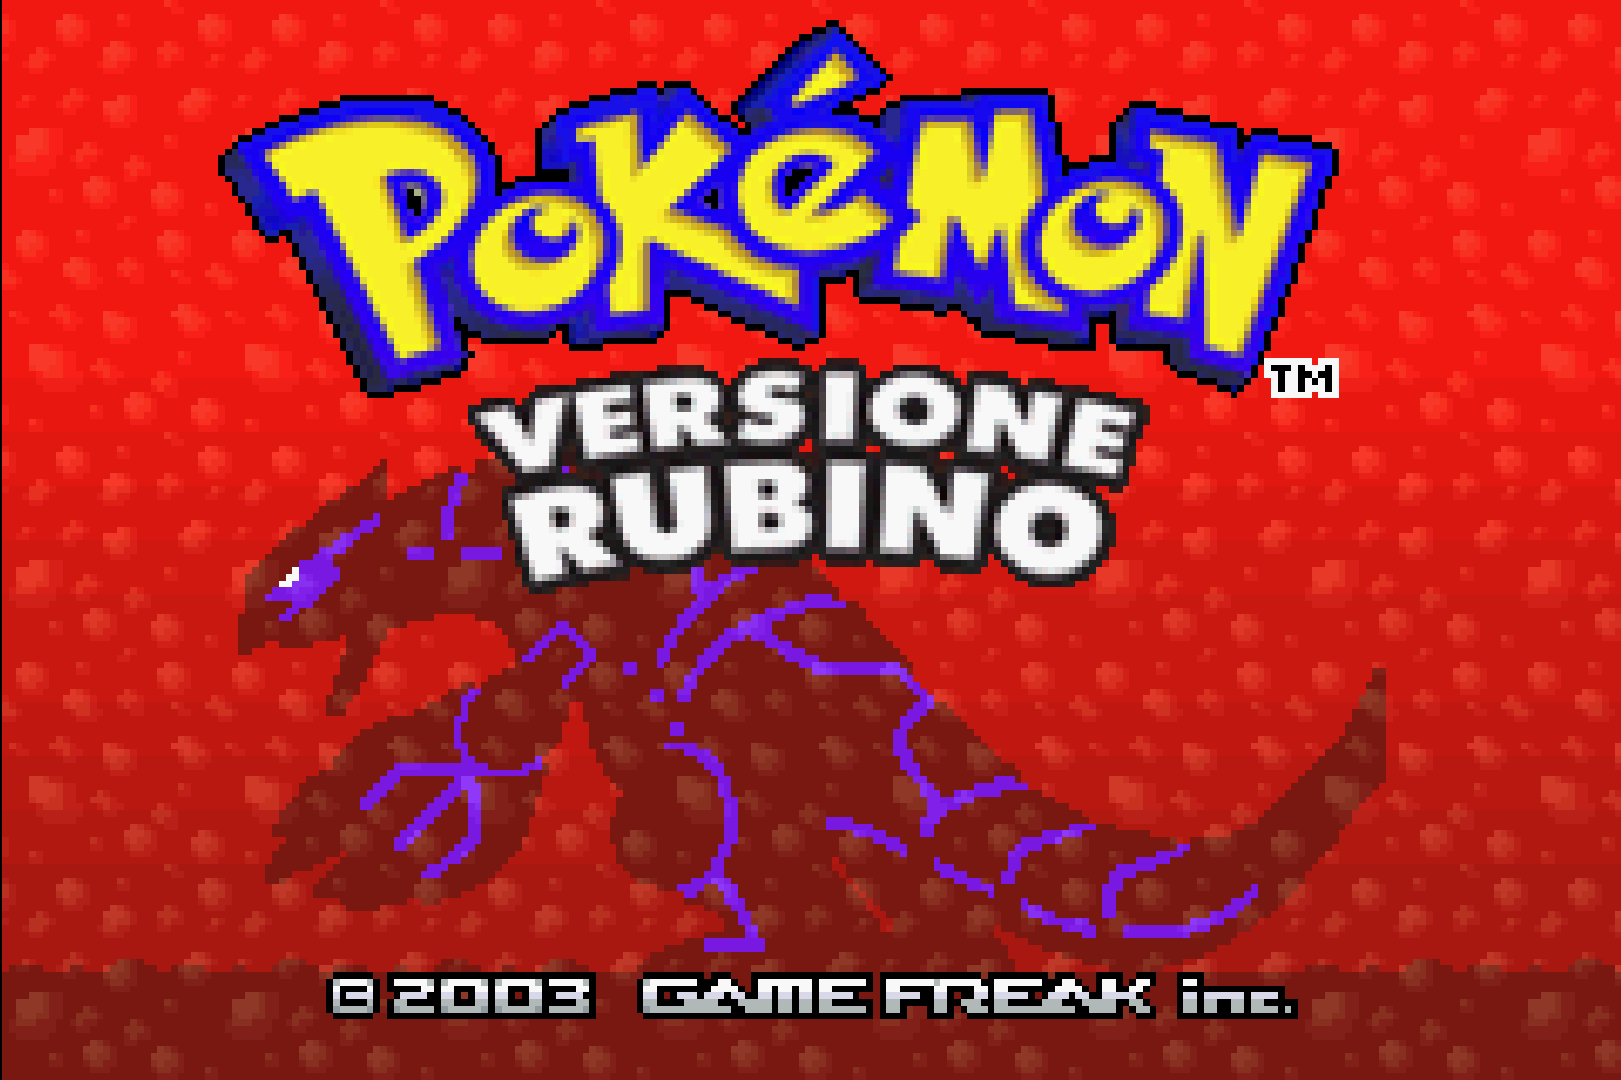 pokemon gold pc download free ruby